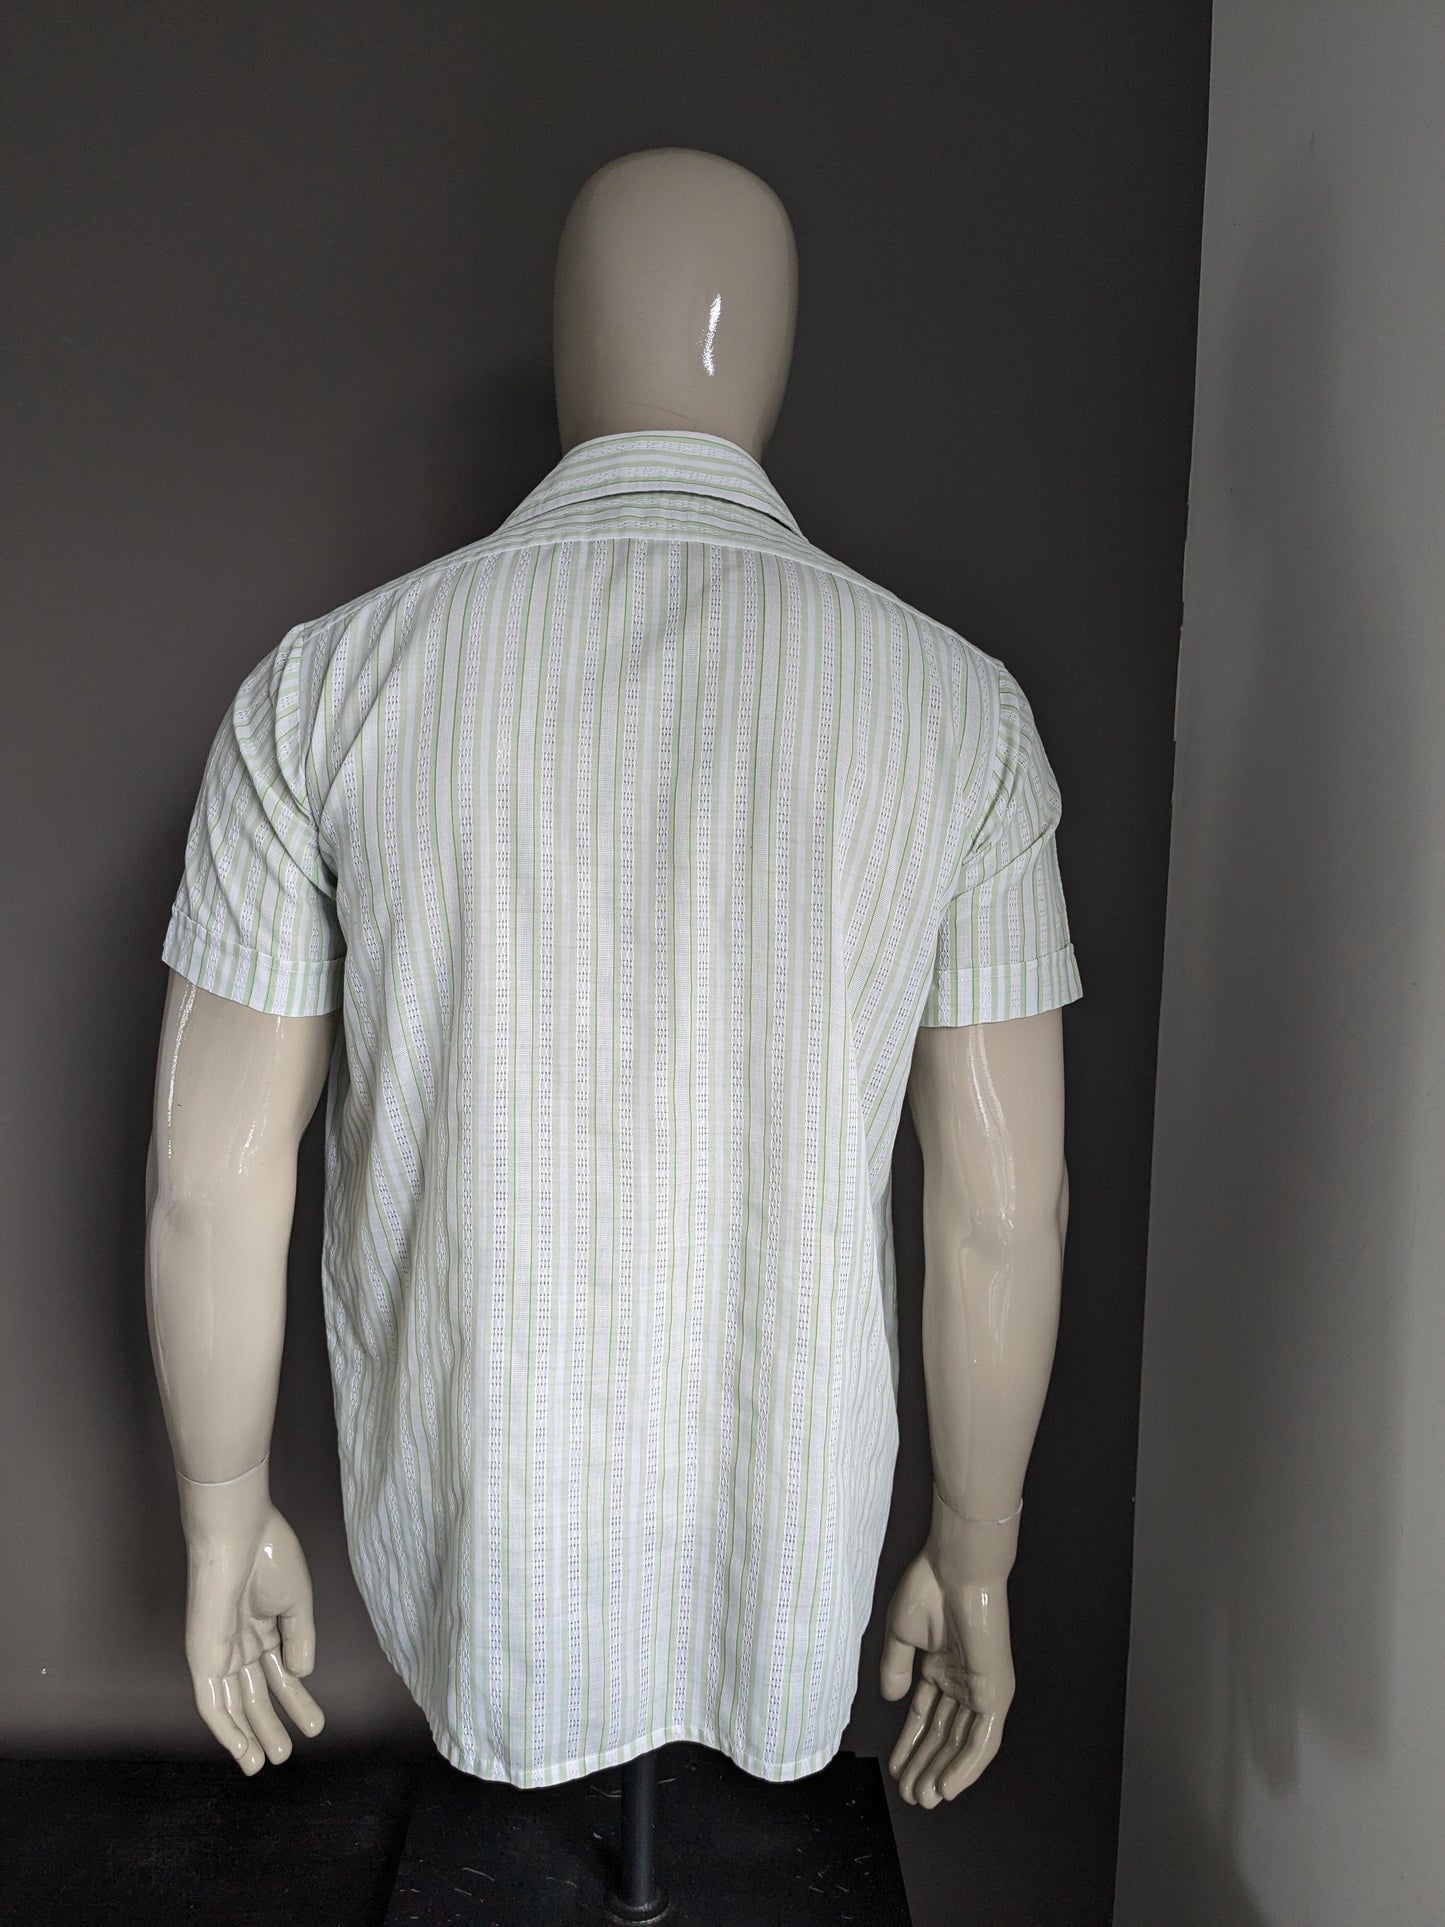 Camisa de amistad vintage manga corta con cuello puntiagudo. Motín de rayas blancas verdes. Talla L.